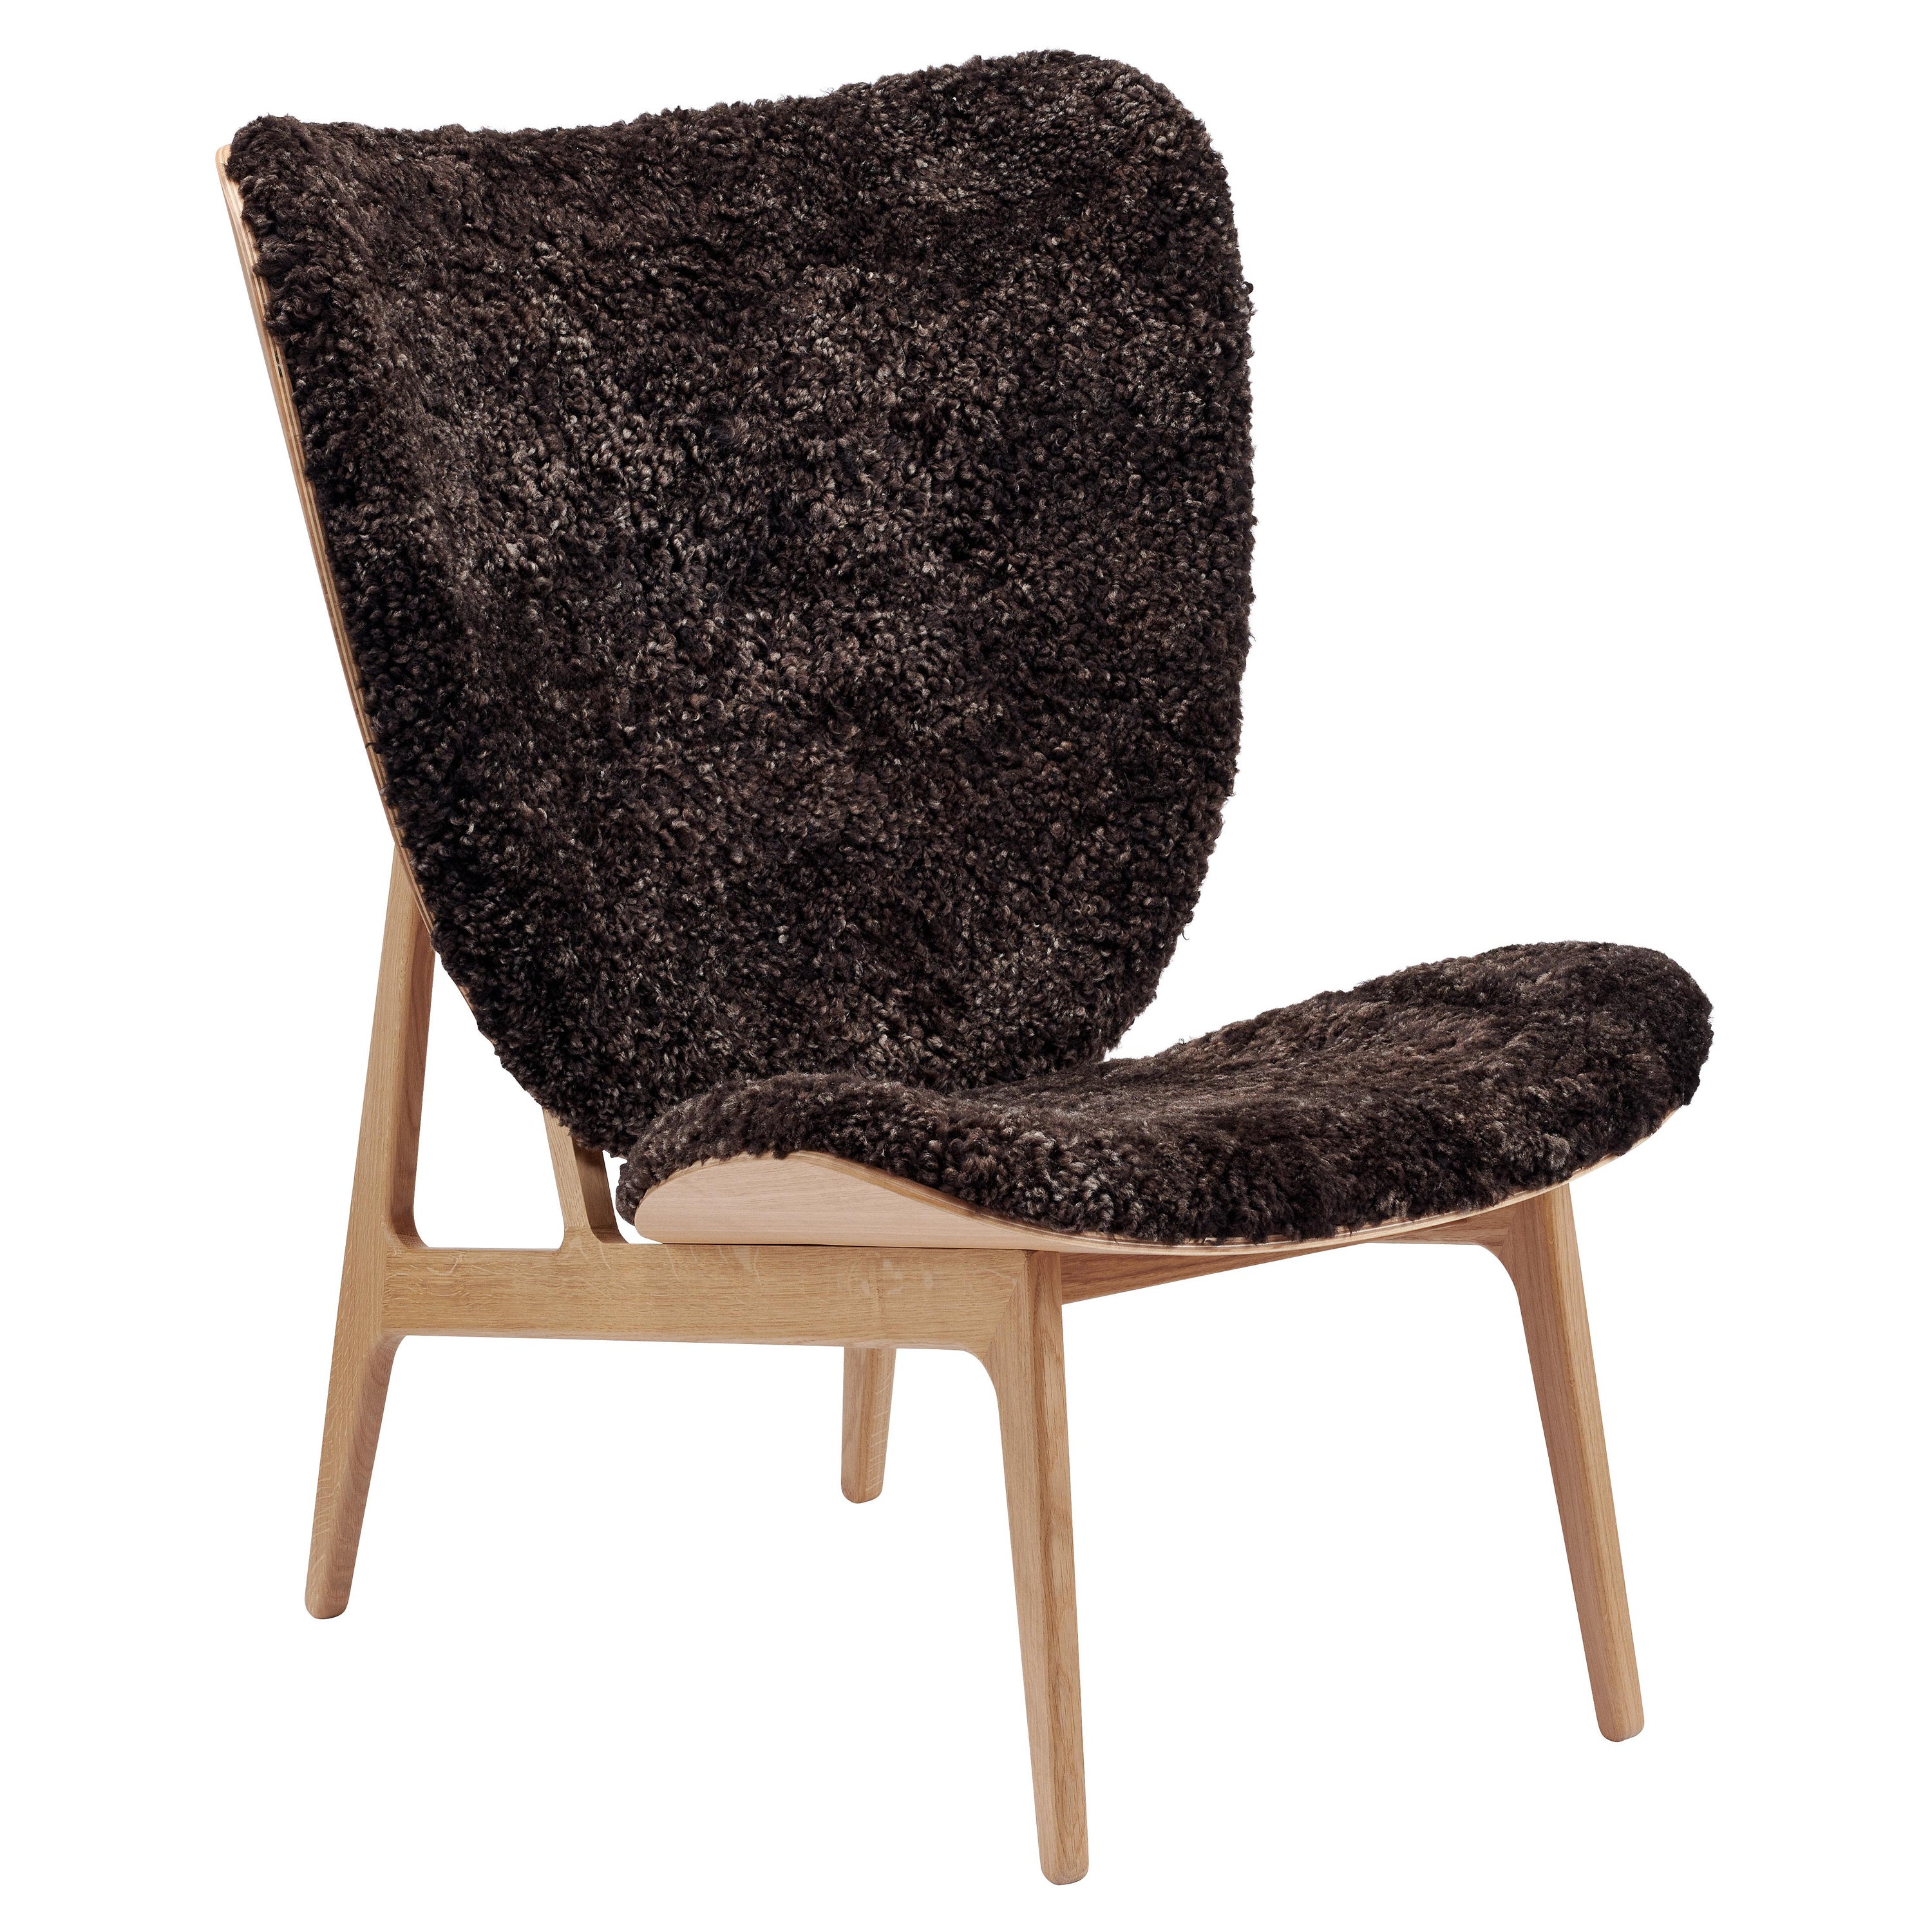 Chaise longue en bois "Elephant" de Norr11, chêne naturel, peau de mouton